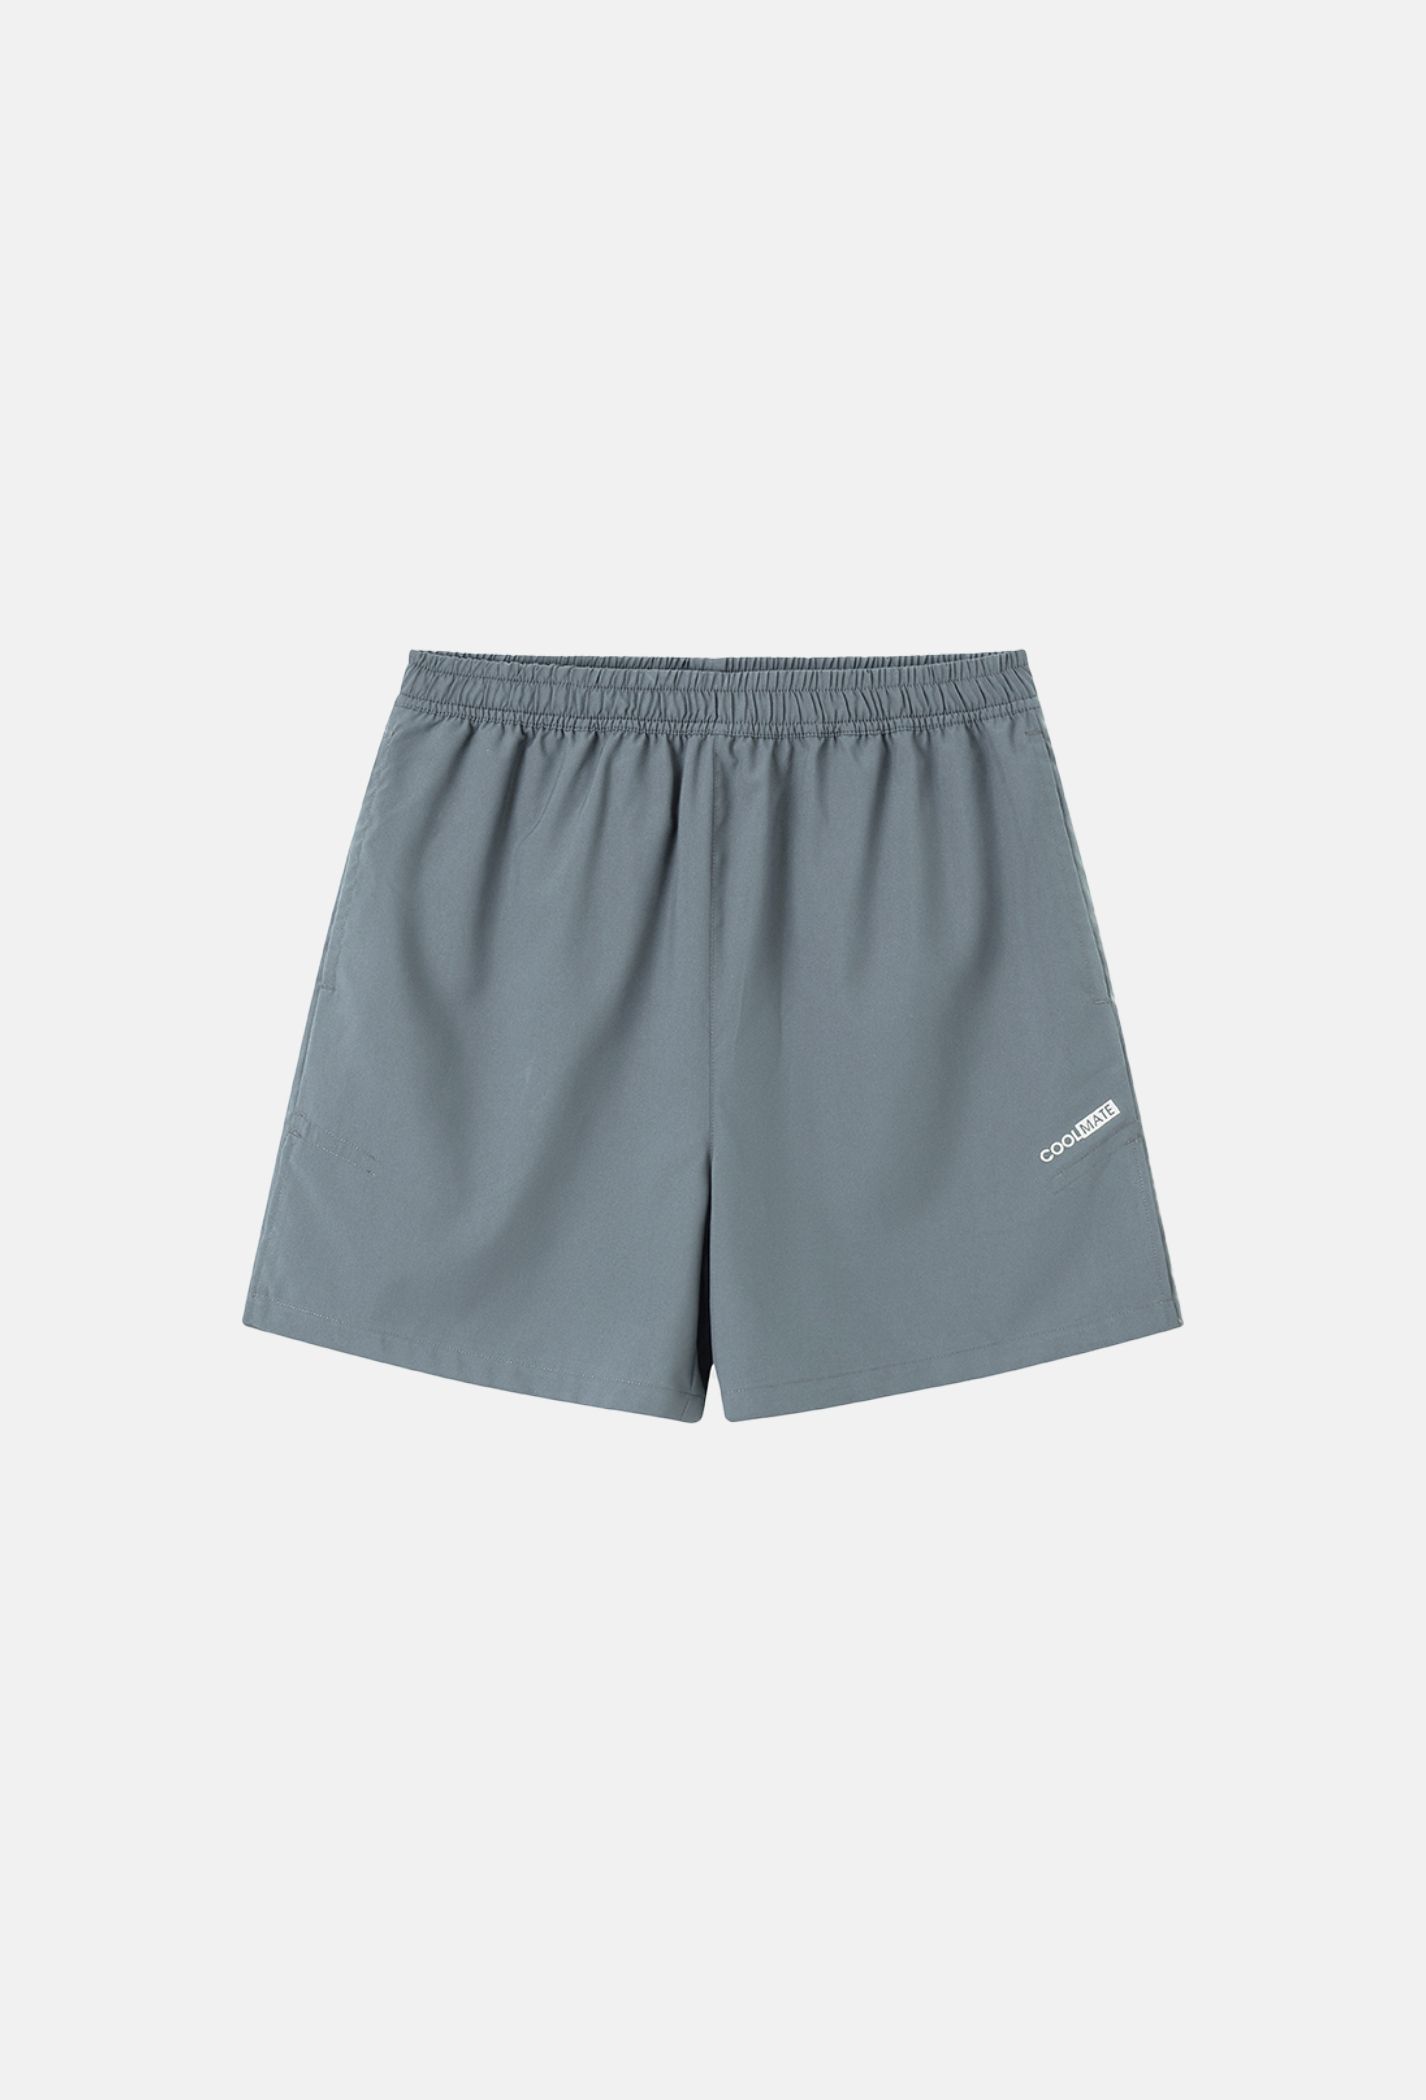 Outlet - Quần shorts nam thể thao 5" xẻ gấu cao (túi sau có khóa kéo) Xám xanh 1